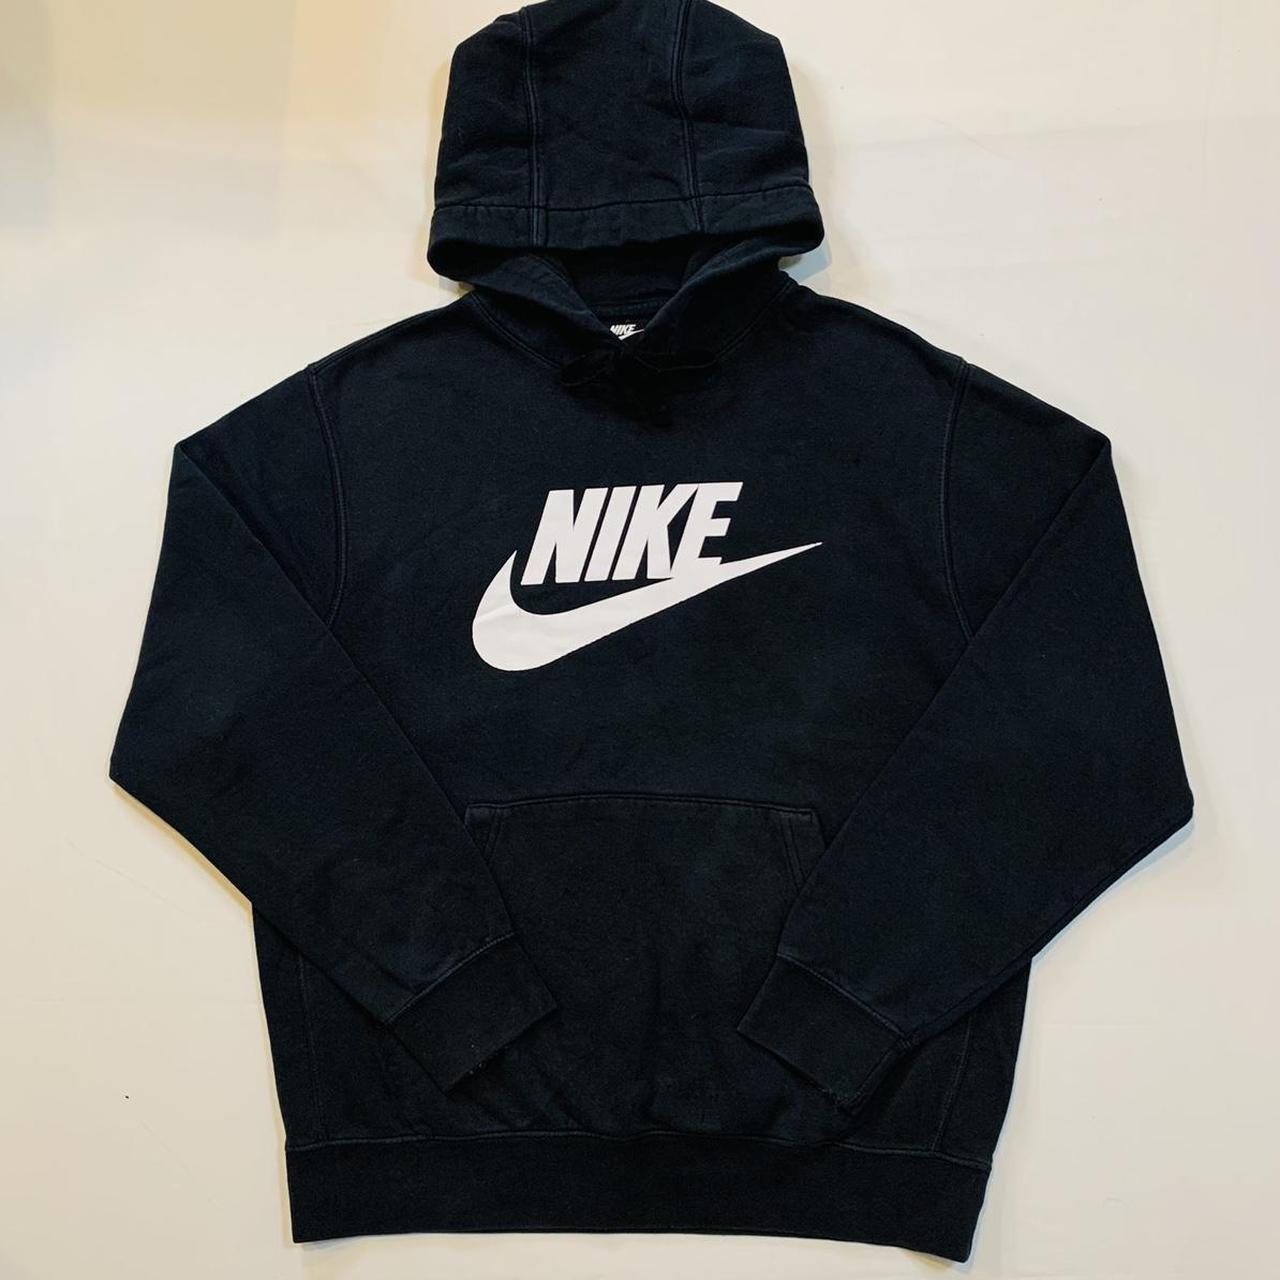 Nike Sportswear Black Hoodie Sweatshirt, This Black